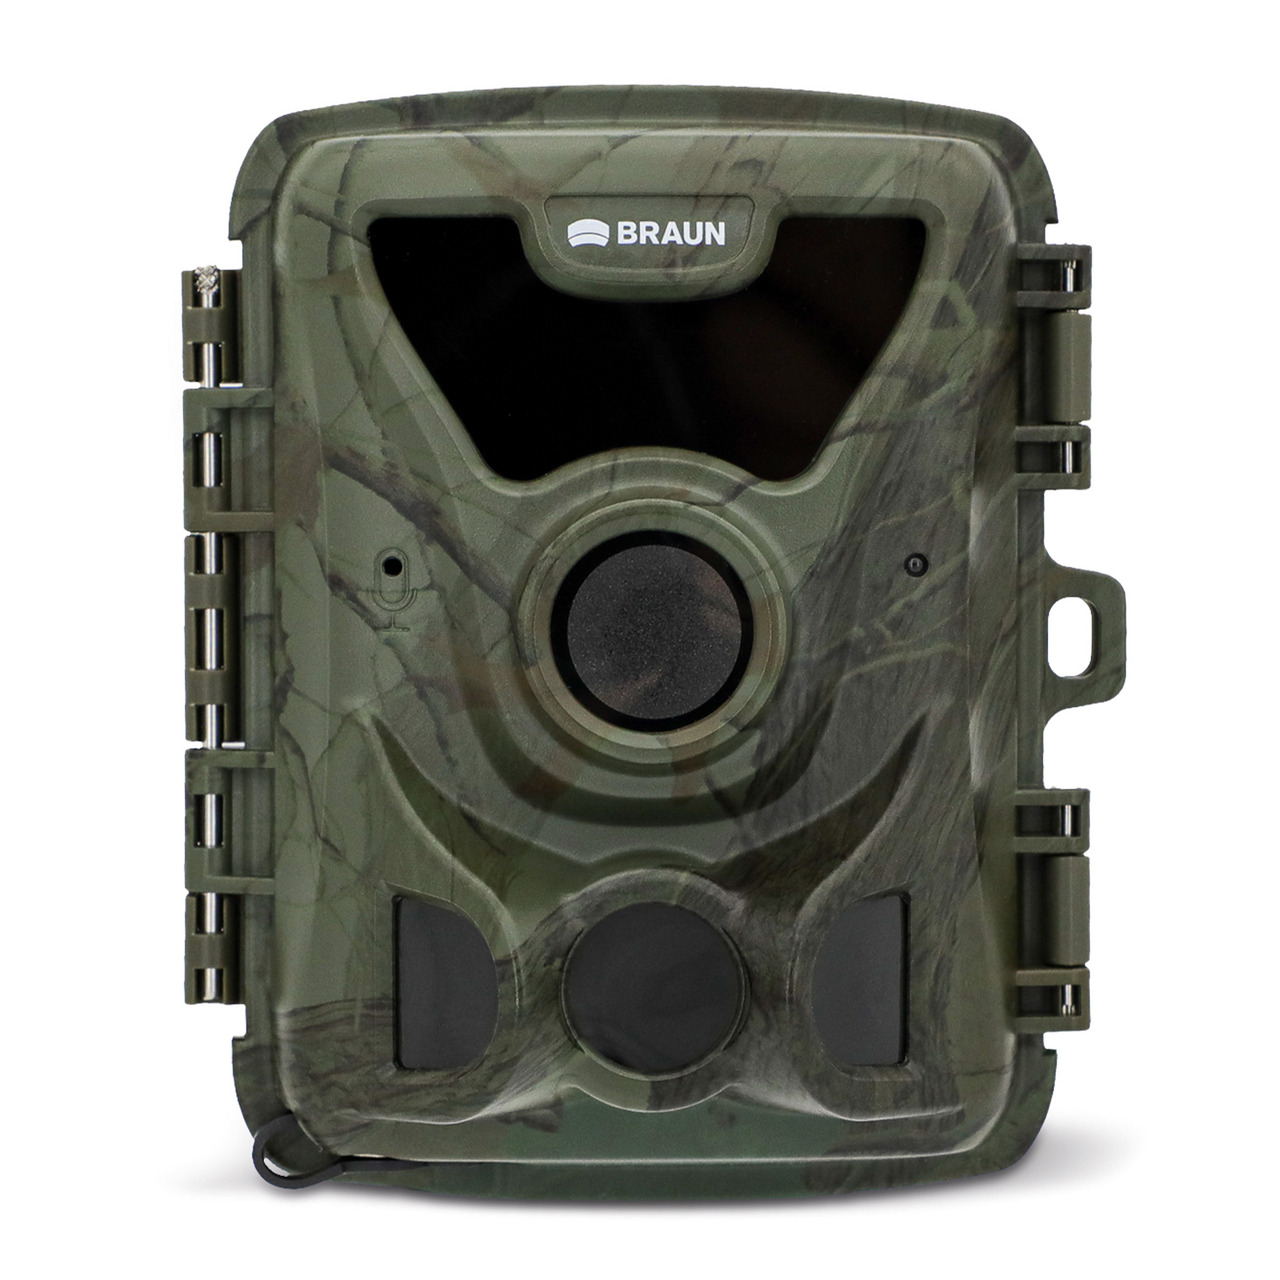 Braun Fotofalle - Wildkamera BLACK200A Mini- Full-HD- kompatibel mit 18650 Akkus- IP66